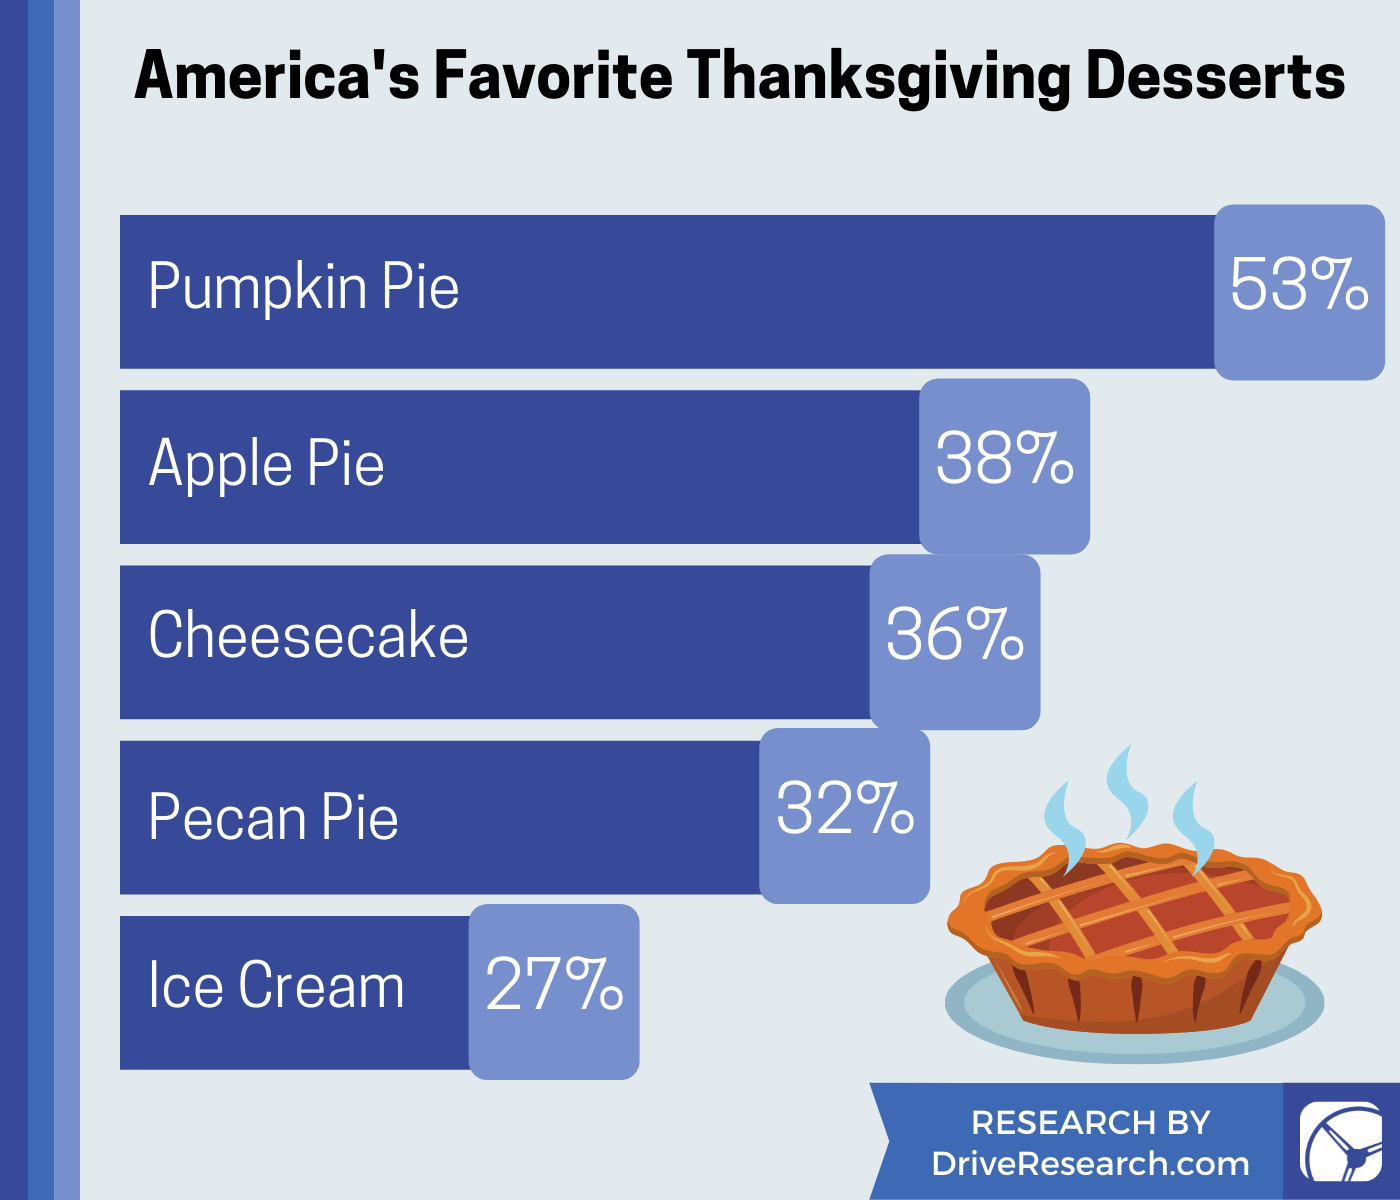 Pumpkin pie is America’s favorite Thanksgiving dessert.